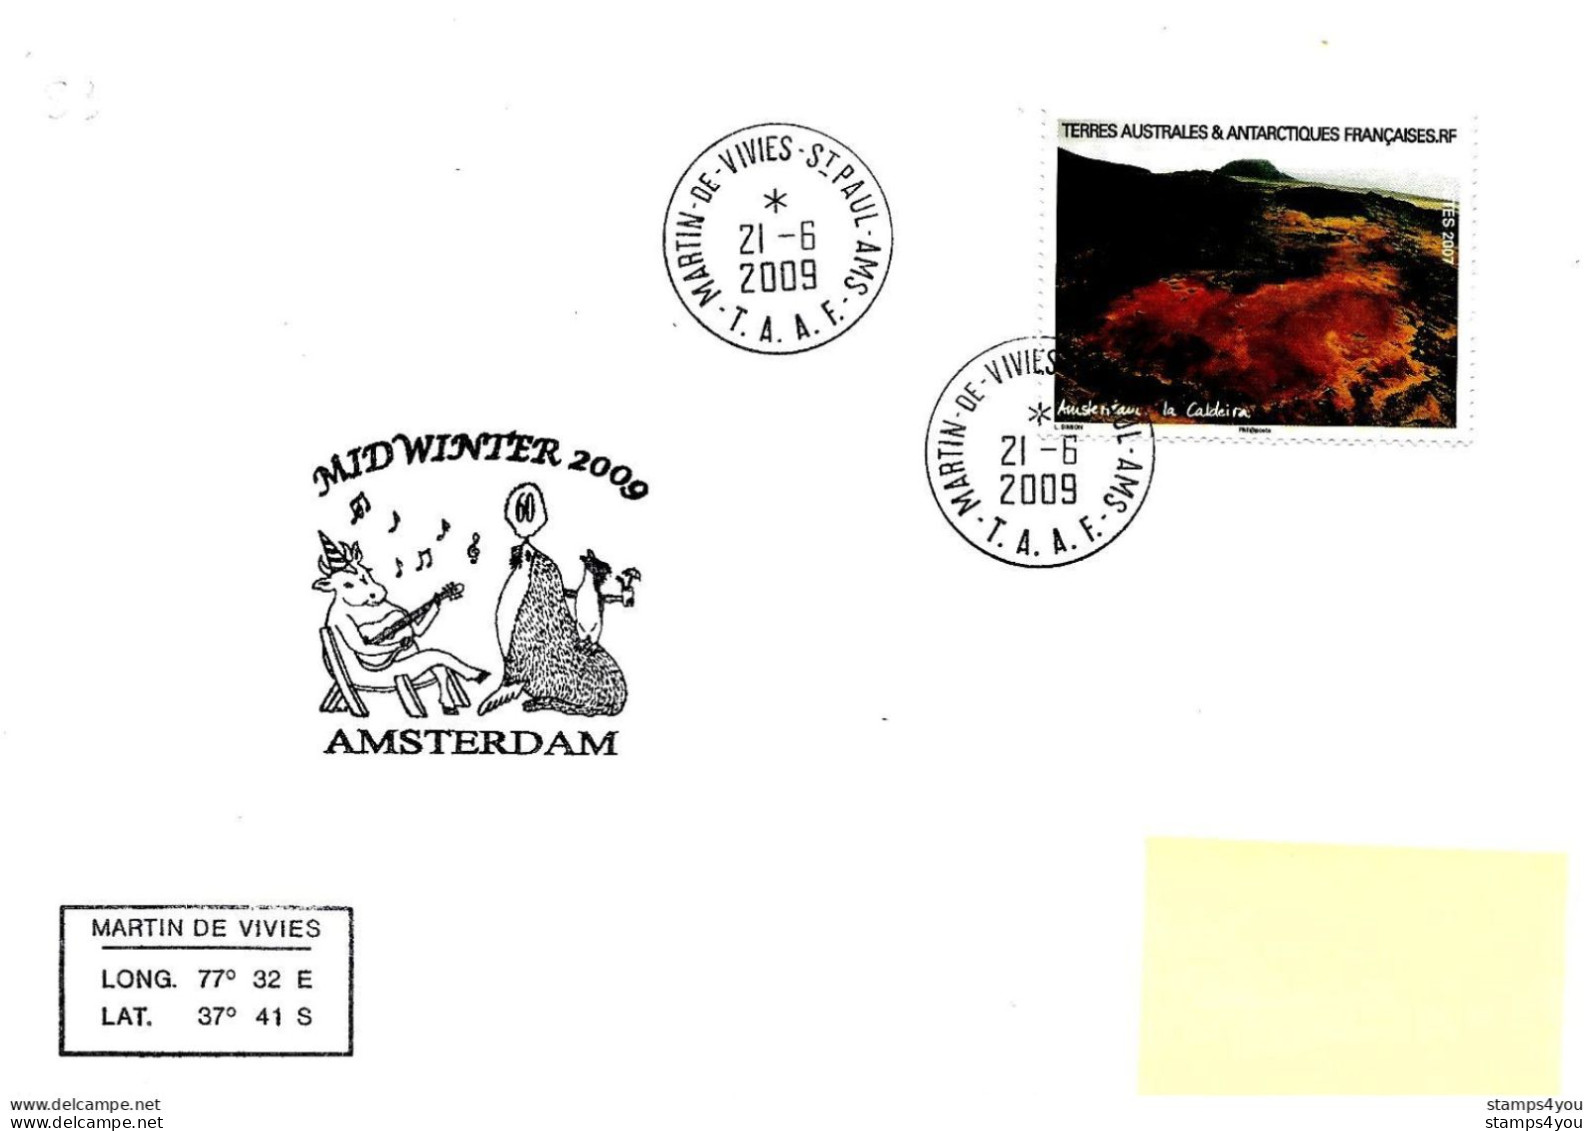 229 - 64 - Enveloppe TAAF St Paul Amsterdam - Cachet Midwinter 2009 - Timbre Carnet De Voyage - Bases Antarctiques